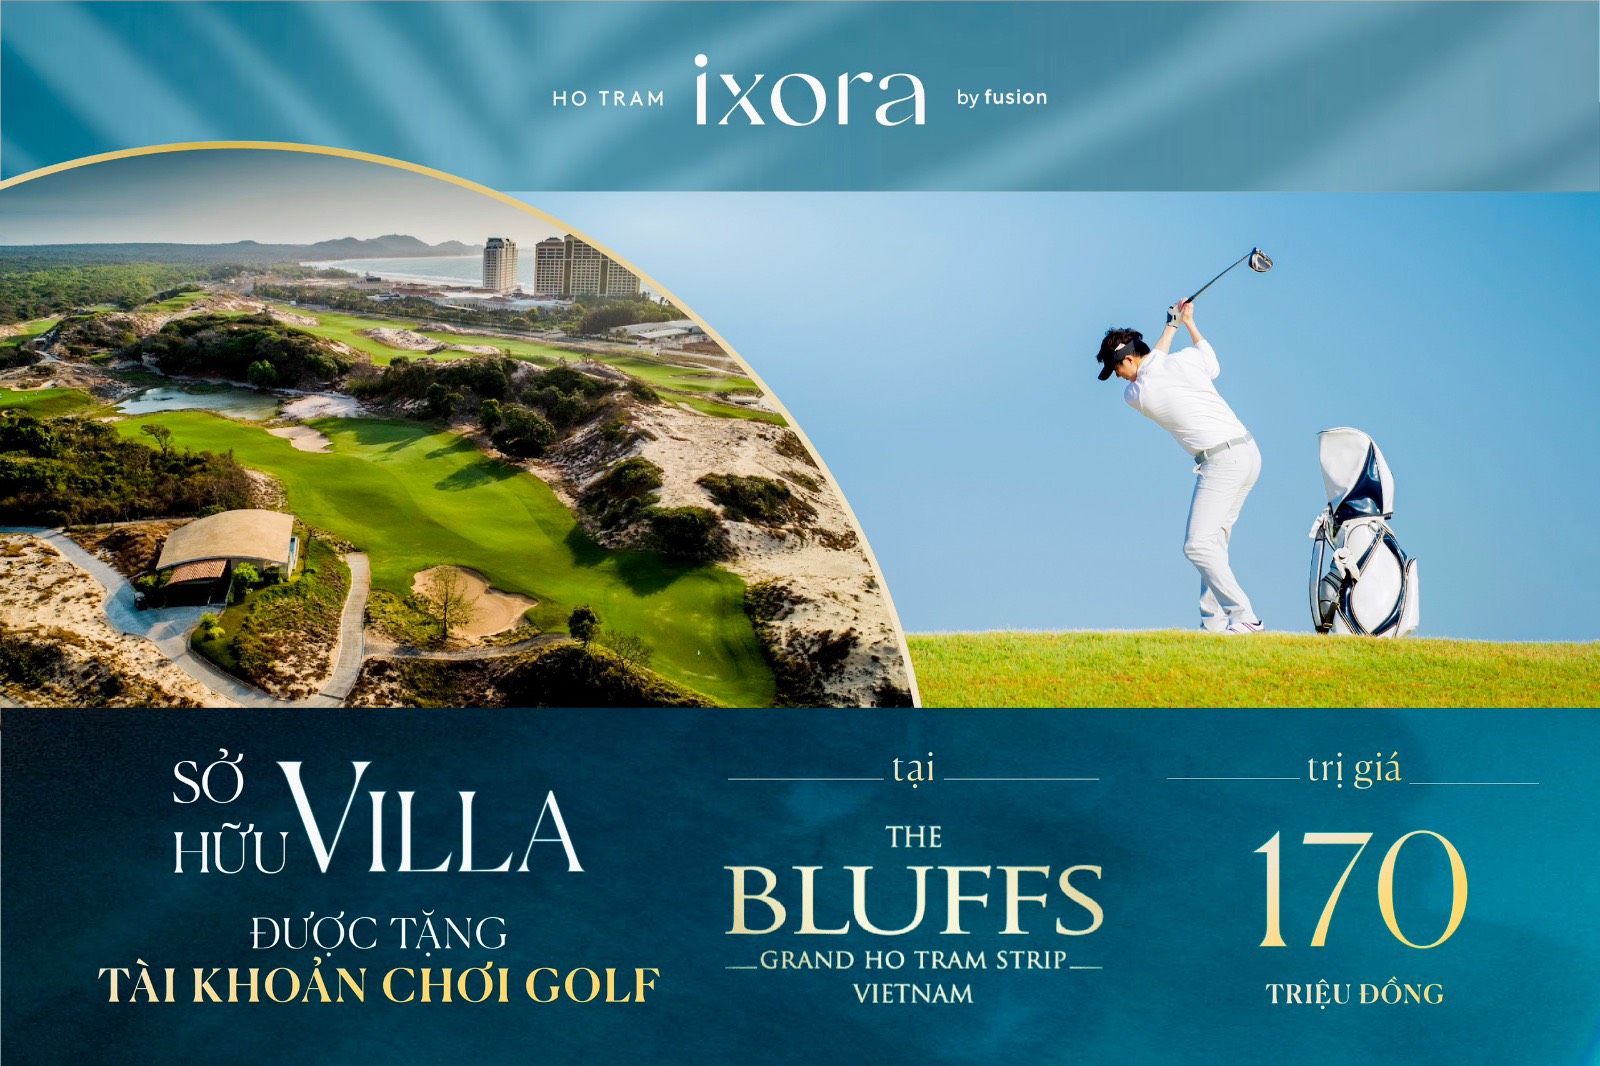  Sở hữu Villa Ixora Hồ Tràm được tặng tài khoản chơi Golf 